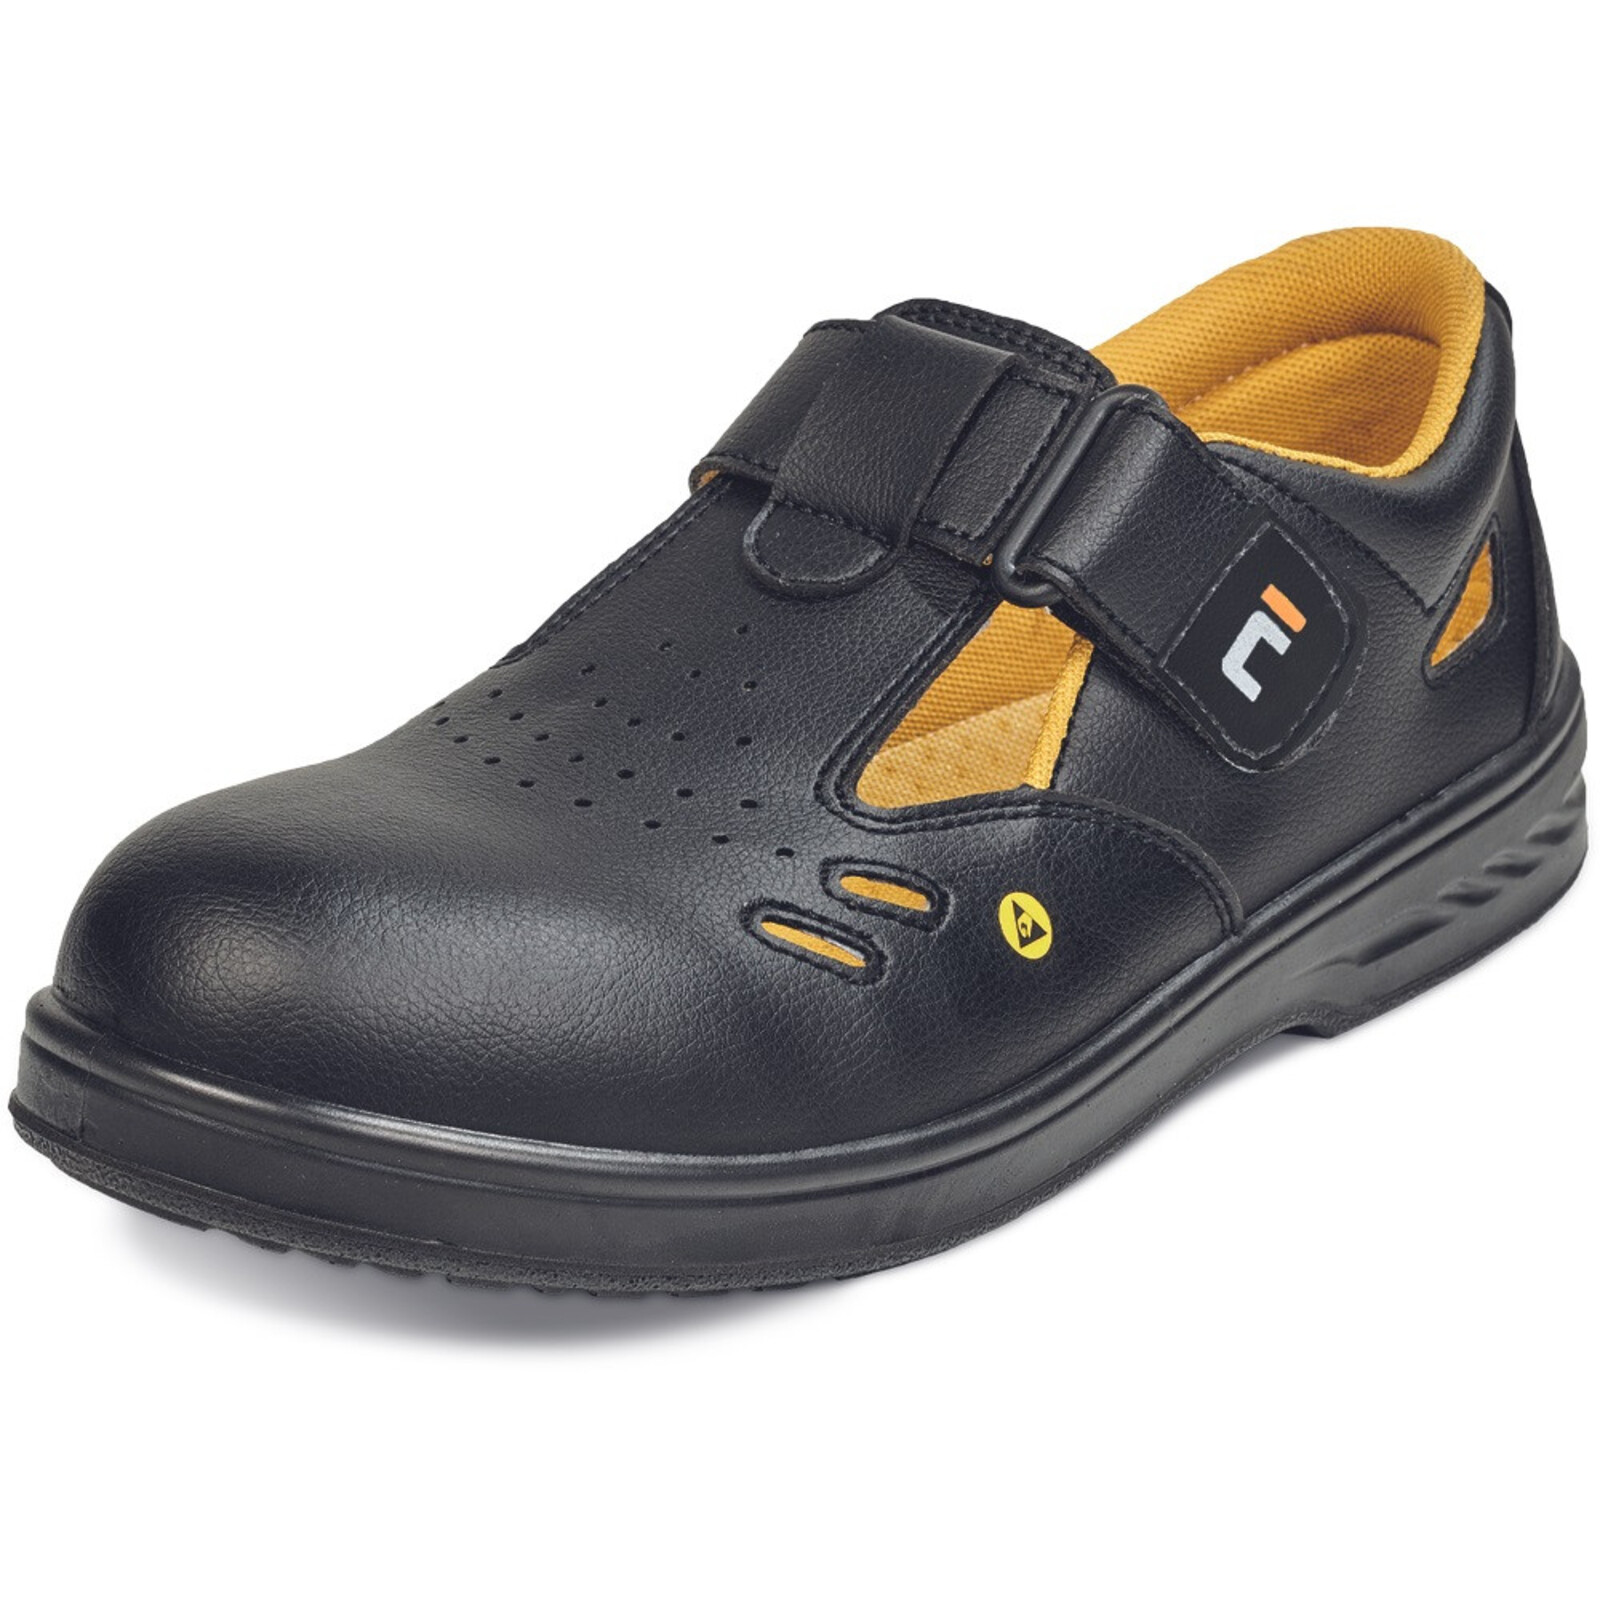 Bezpečnostné sandále Raven MF ESD S1 SRC - veľkosť: 41, farba: čierna